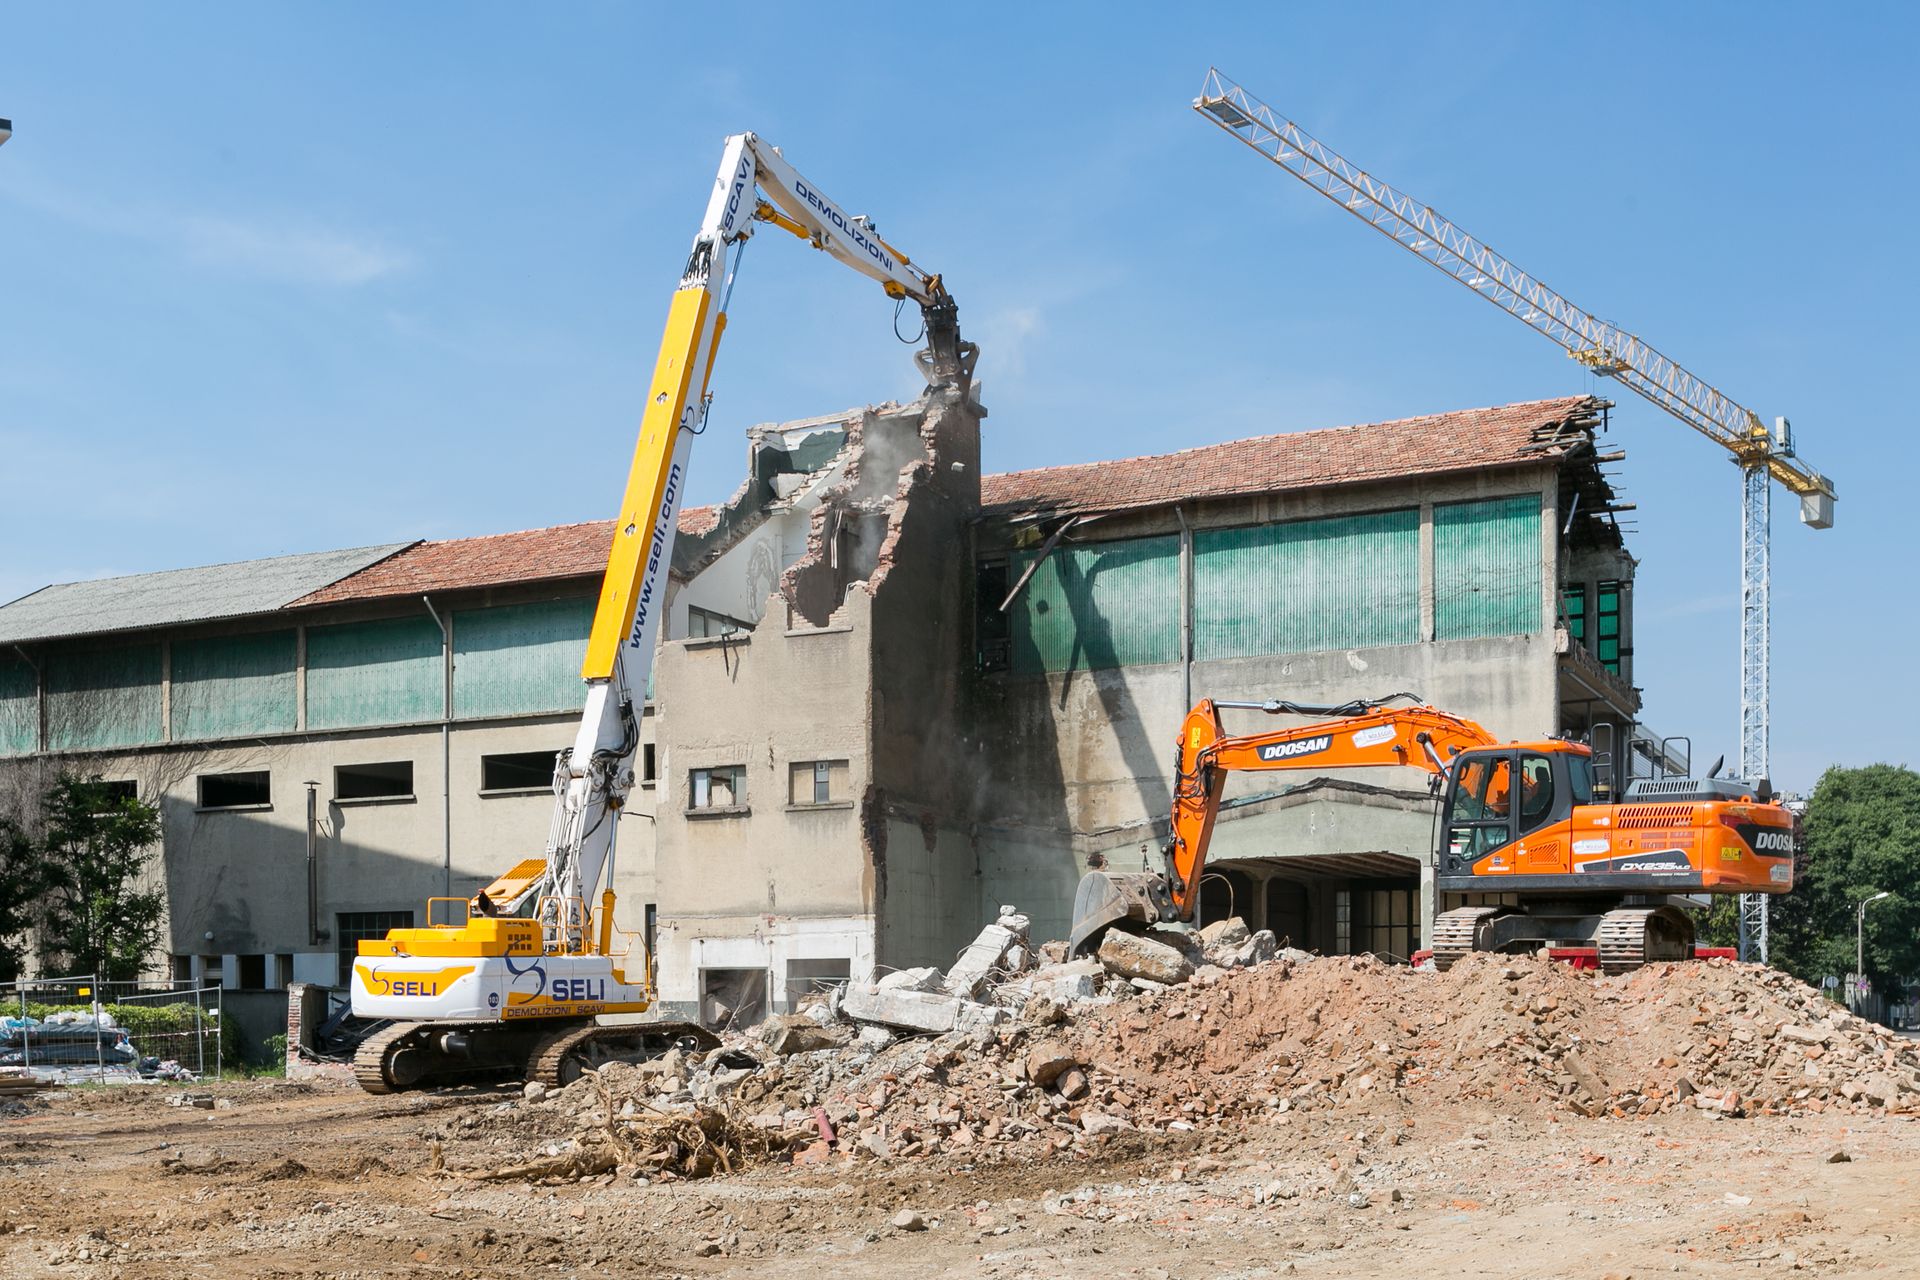 Escavatore da demolizione al lavoro nell’ex stabilimento Brugola OEB